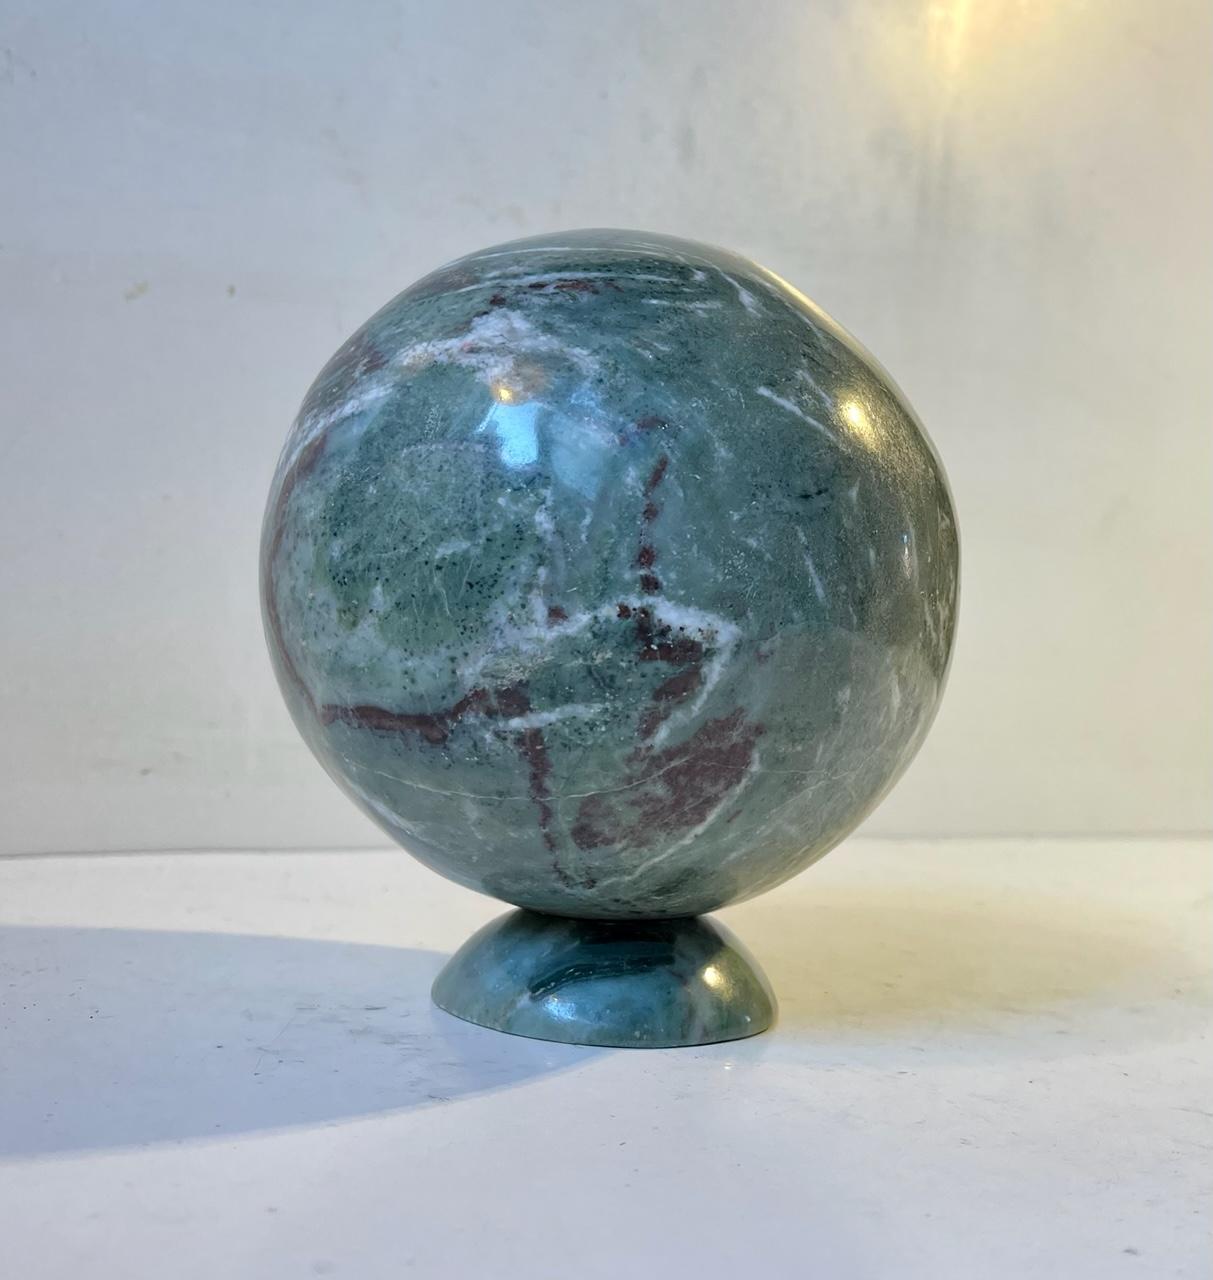 Handgefertigte Kugel mit passendem Ständer in grünem Fuchsite Kristall. Abgebaut, bearbeitet und poliert in Madagaskar um 1980. Abmessungen: H: 14 cm, T: 12 cm. Gewicht: über 2 kg. Fuchsit Hornstein, auch bekannt als 